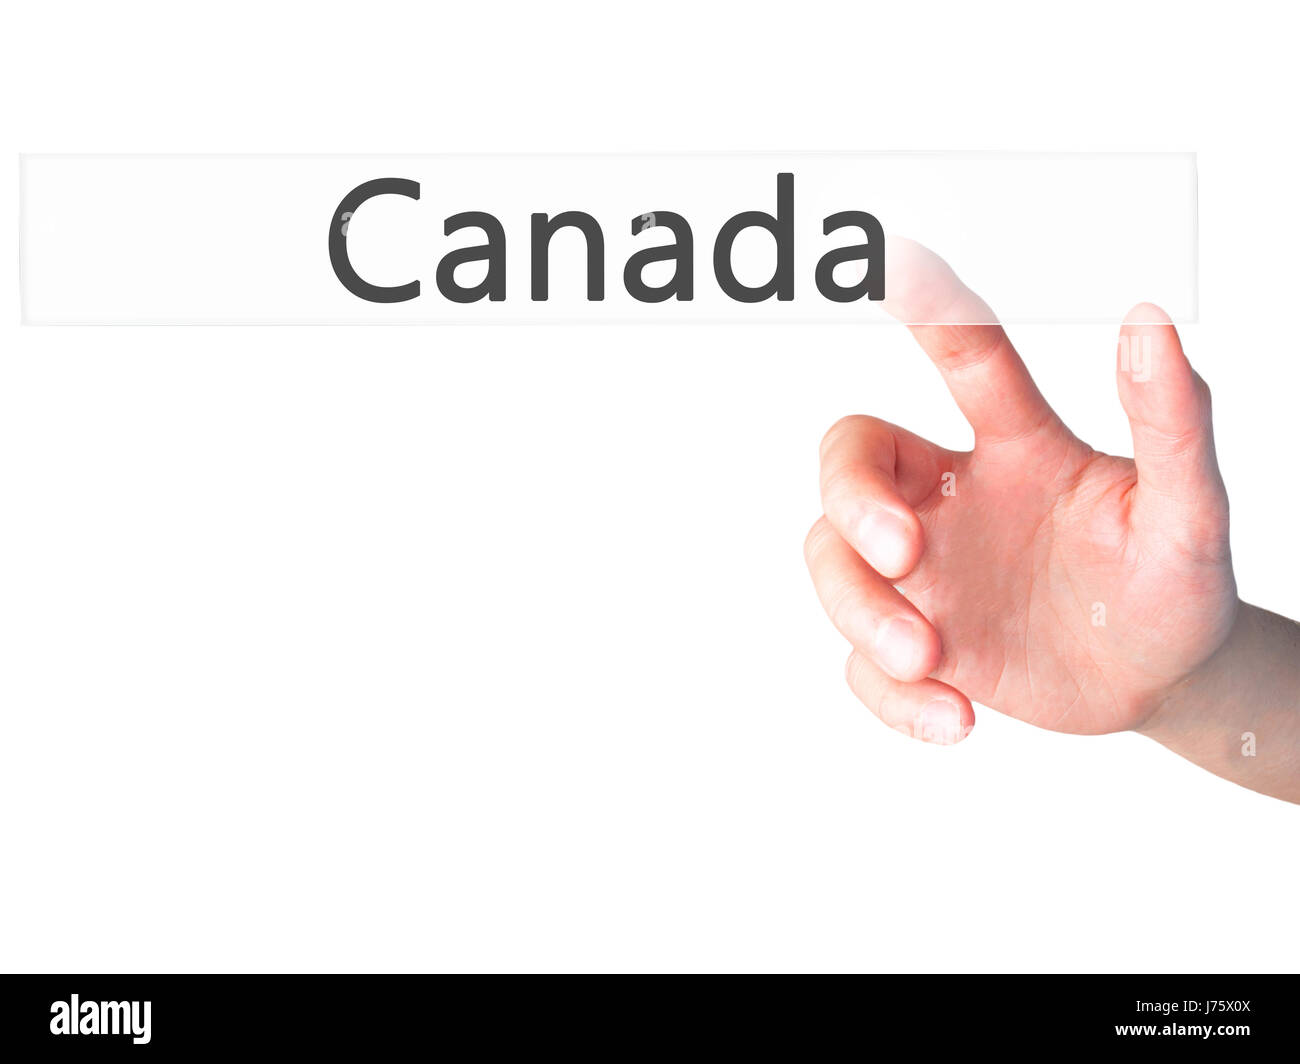 Kanada - Hand drücken einer Taste auf unscharfen Hintergrund Konzept. Wirtschaft, Technologie, Internet-Konzept. Stock Foto Stockfoto